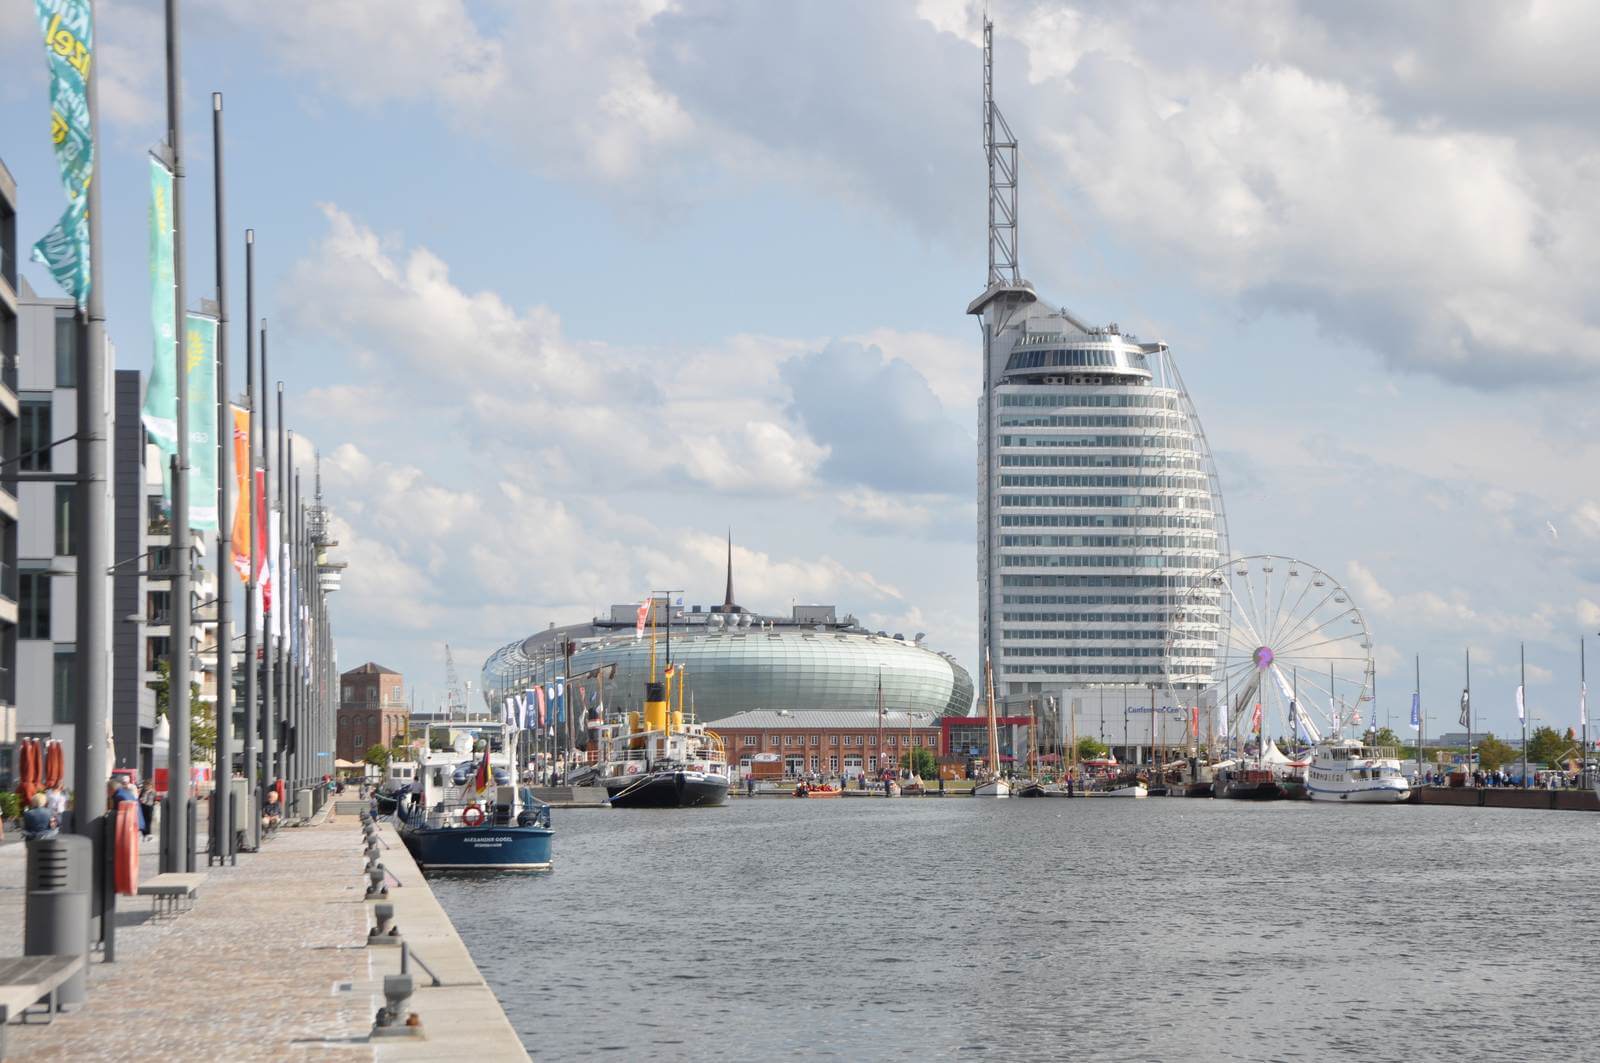 Foto: Das Klimahaus (links im Bild in Form eines Bootes) und das markante Atlantis-Hotel am Neuen Hafen in Bremerhaven - Lupe Reisen